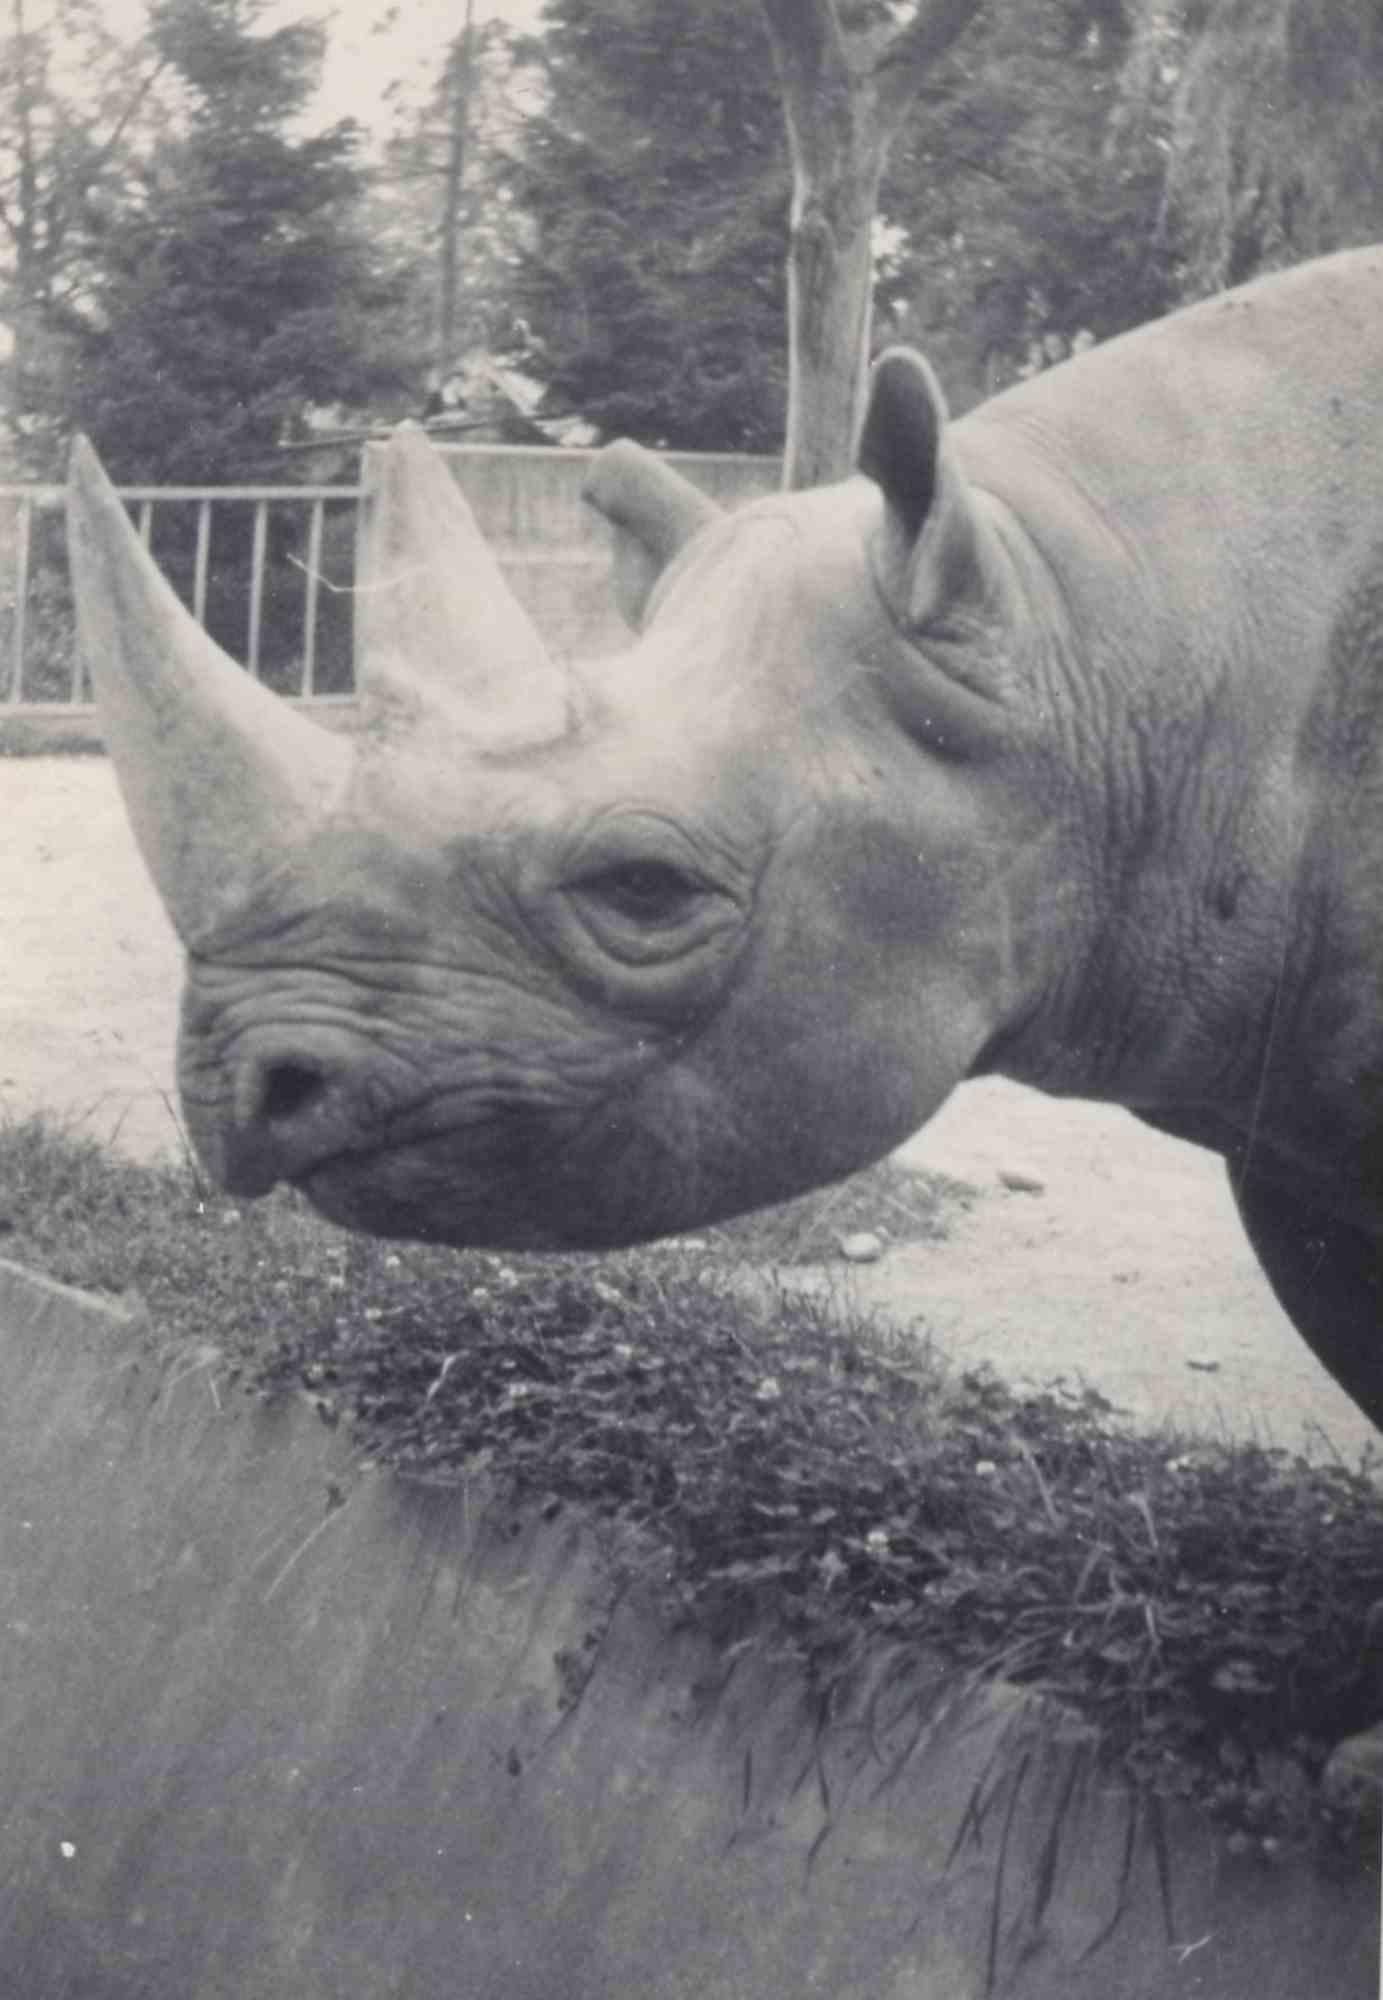 Unknown Landscape Photograph – Old days Foto – Südafrikanische Rhinoceros – Vintage-Foto – frühes 20. Jahrhundert